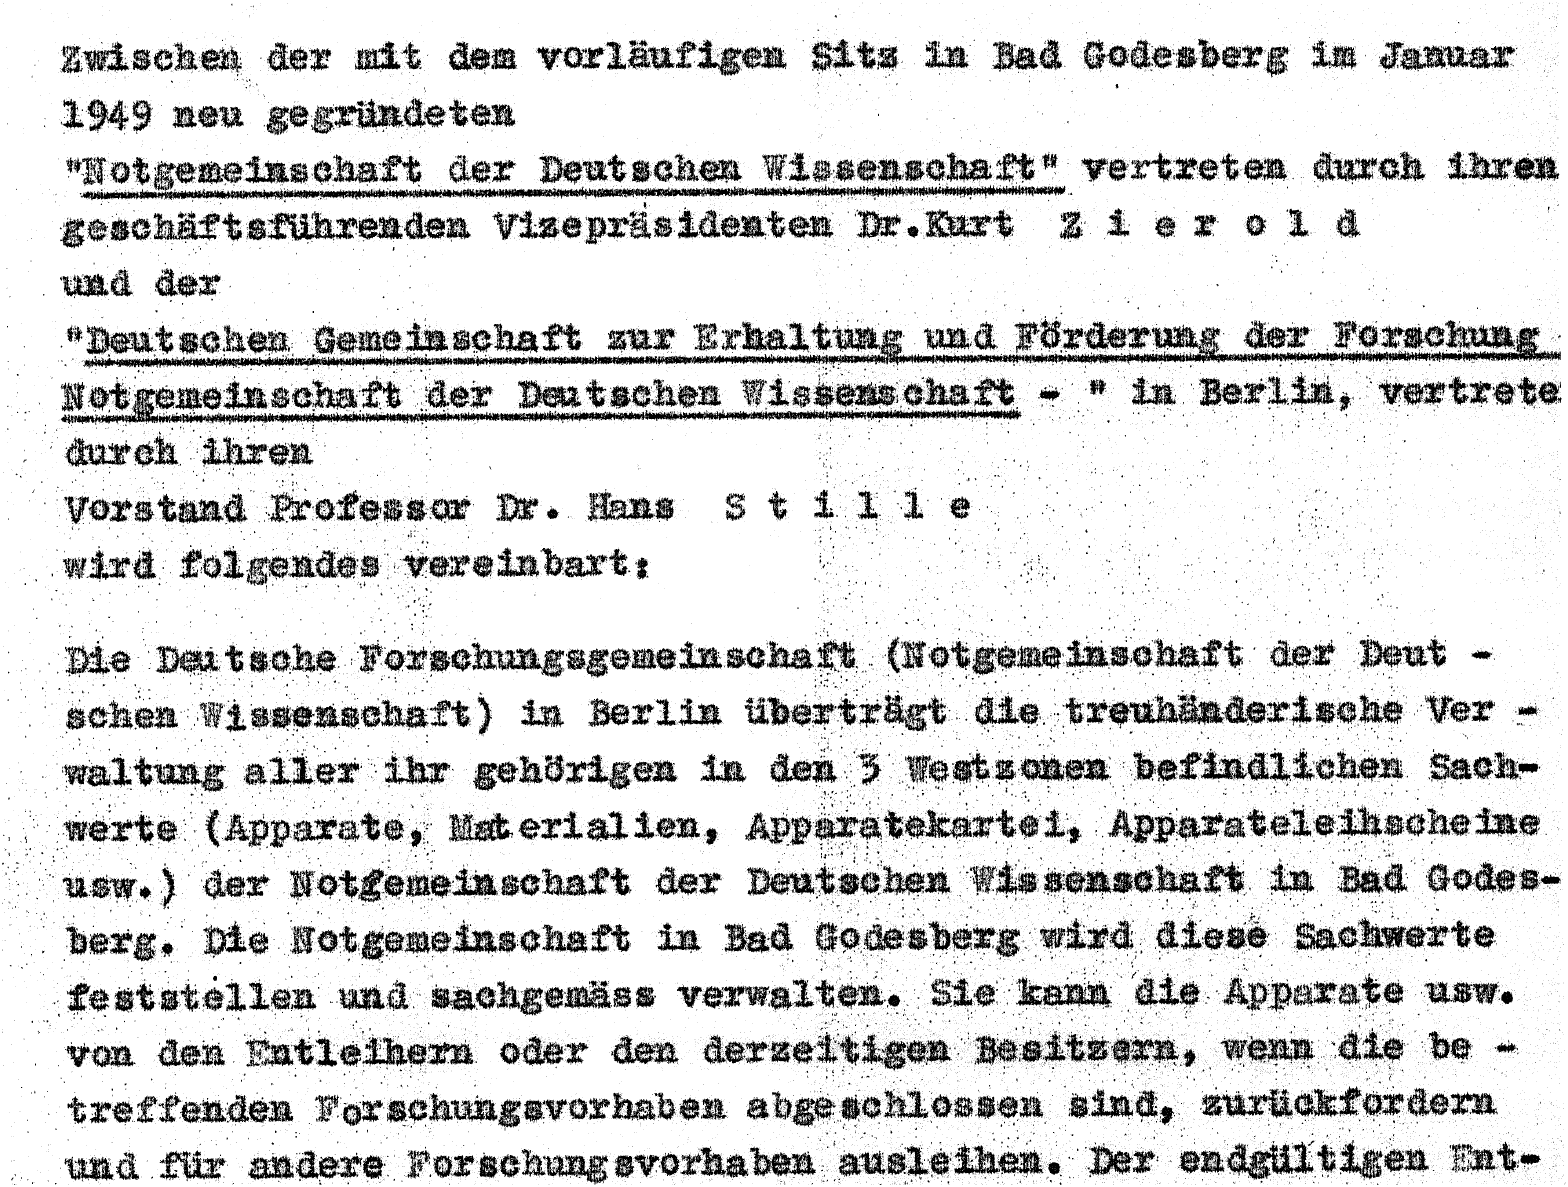 Ausschnitt aus dem am 22. Juni 1948 unterzeichneten Abkommen zwischen der Bonner und der Berliner Notgemeinschaft, der Bonner Notgemeinschaft die treuhänderische Verwaltung des Eigentums der Berliner Notgemeinschaft zu übertragen.